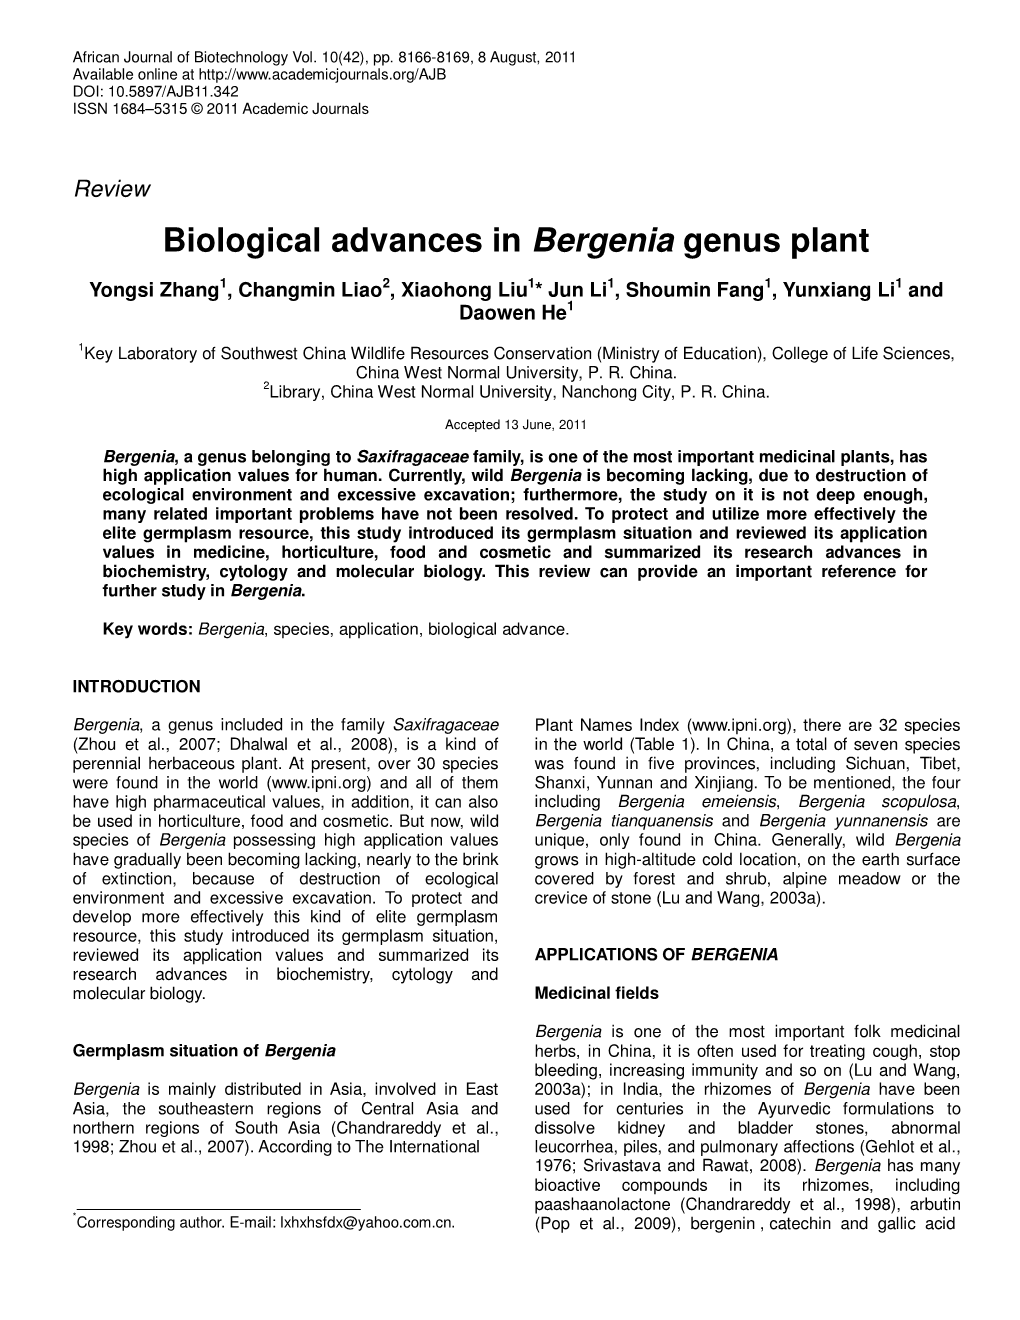 Biological Advances in Bergenia Genus Plant